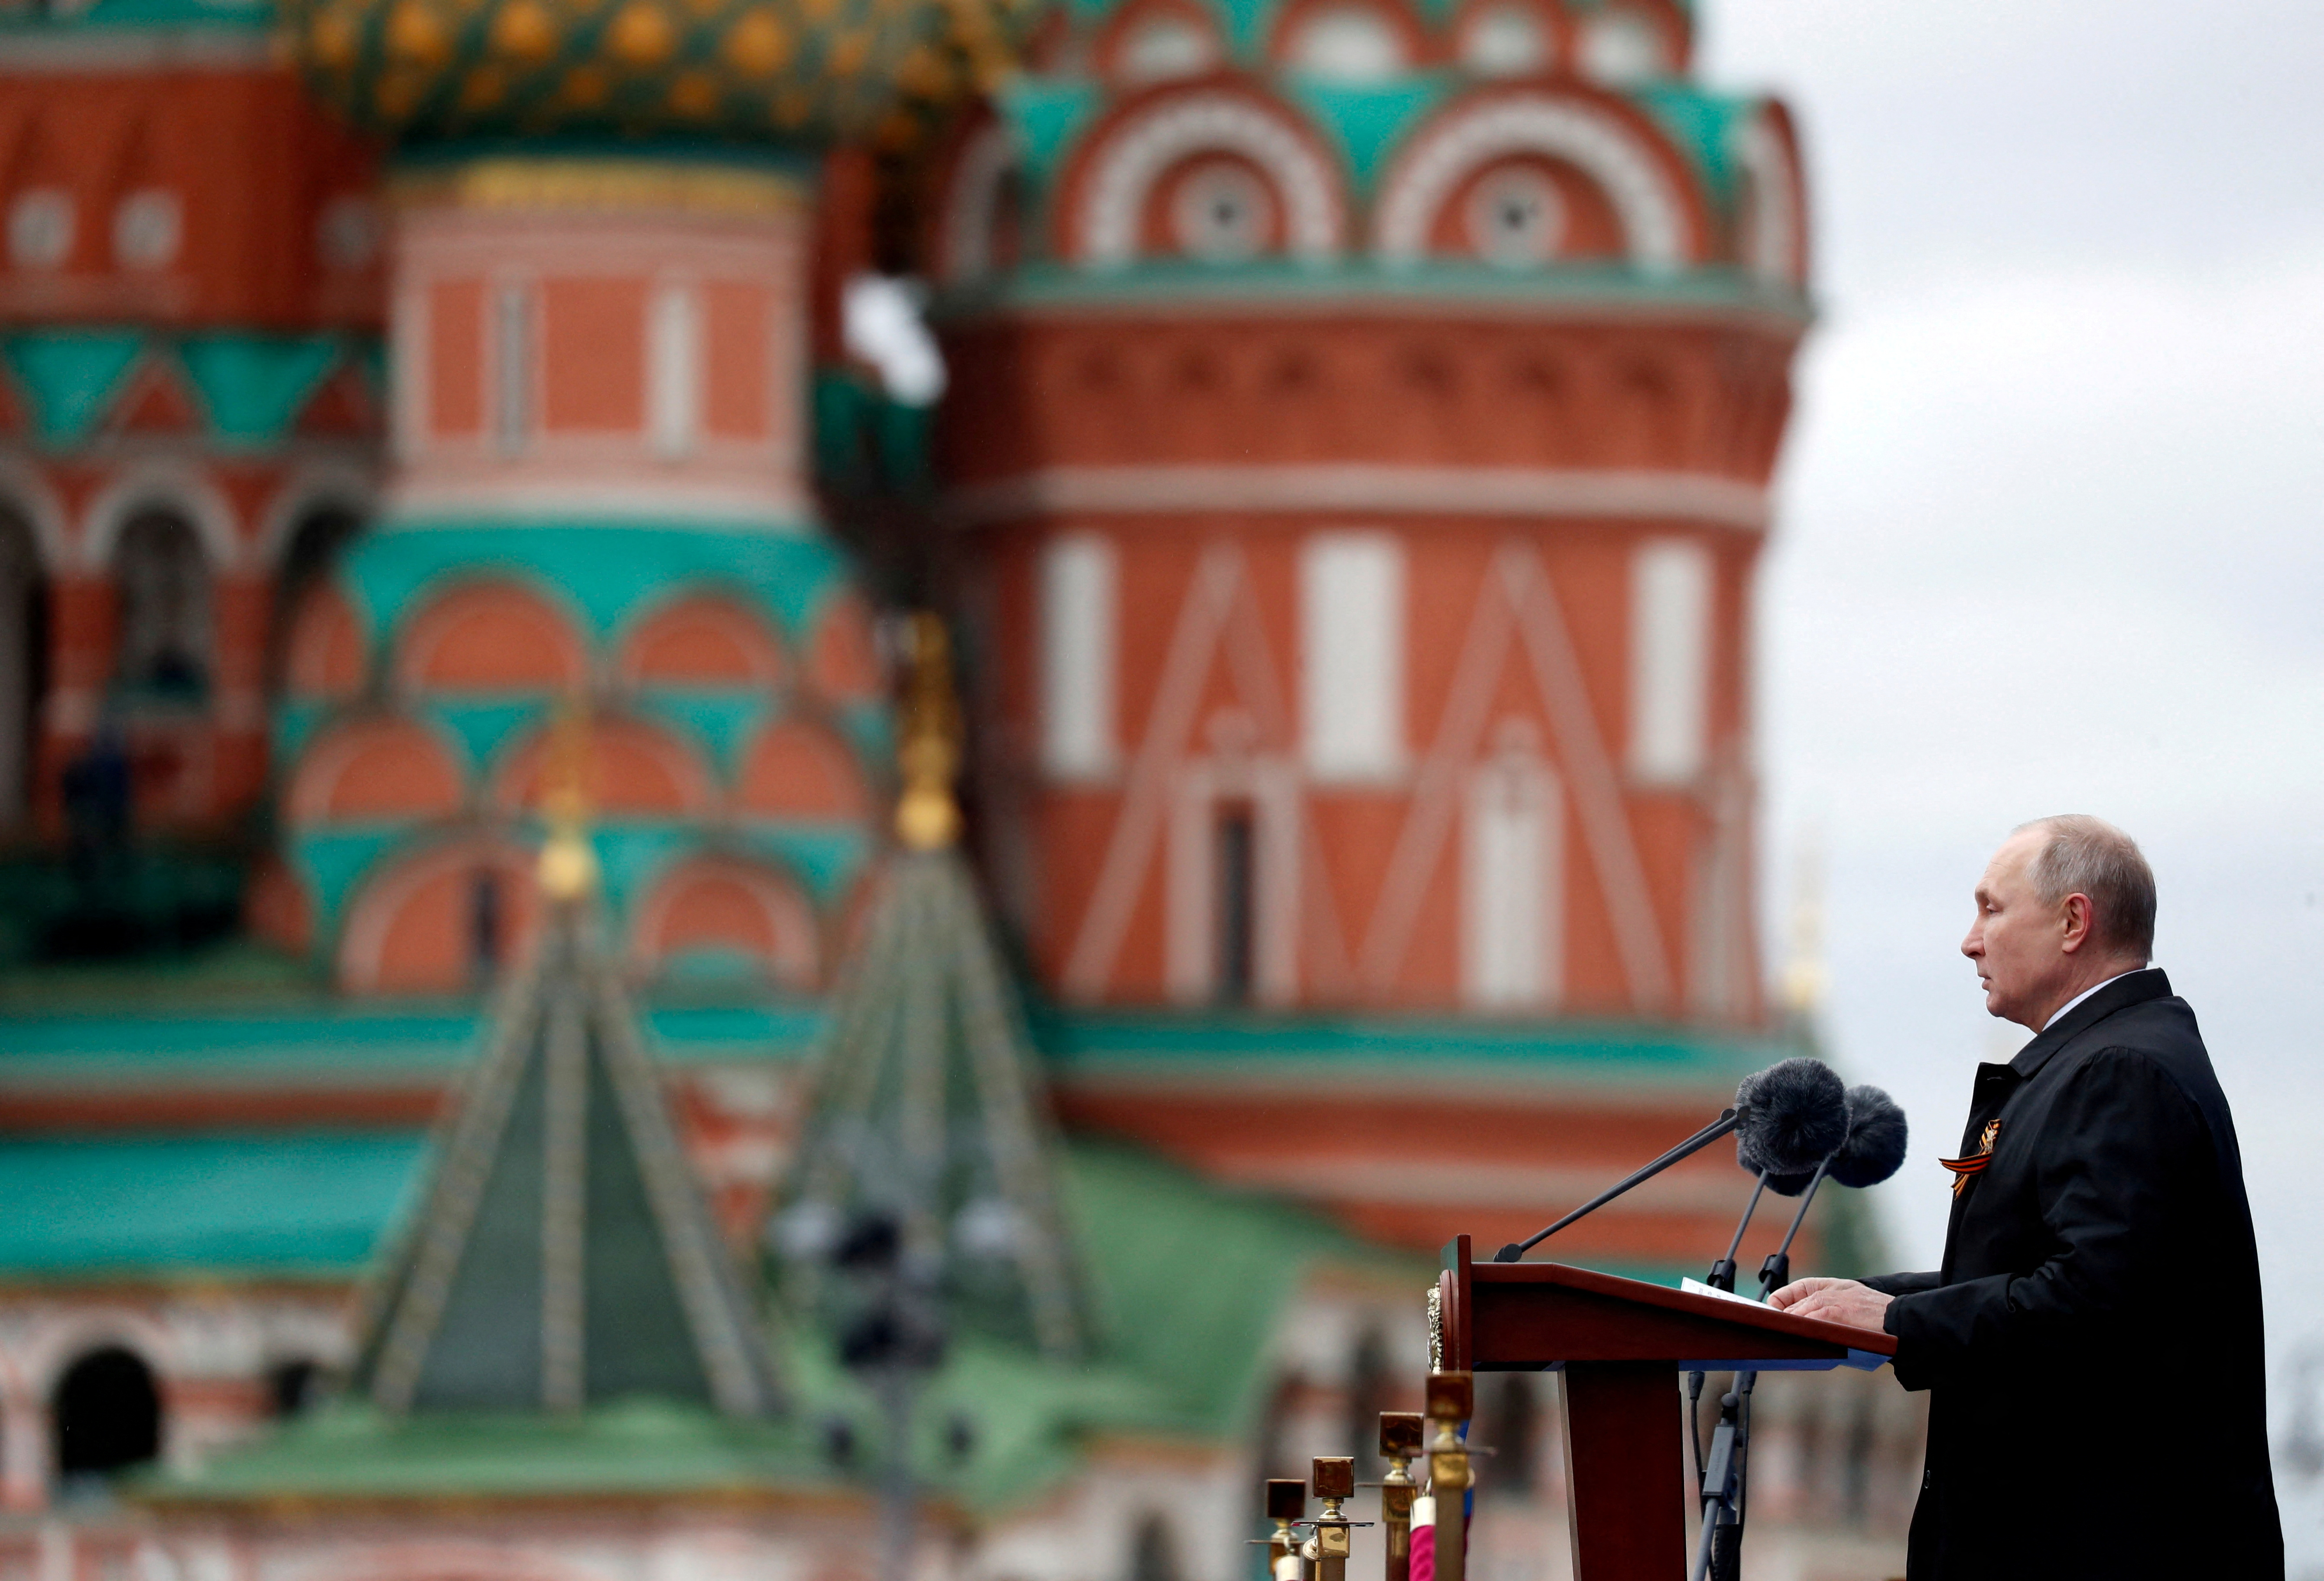 FOTO DE ARCHIVO: El presidente ruso, Vladimir Putin, pronuncia un discurso durante el desfile militar en el Día de la Victoria, que marca el aniversario de la victoria sobre la Alemania nazi en la Segunda Guerra Mundial, en la Plaza Roja en el centro de Moscú el 9 de mayo de 2021 (REUTERS)